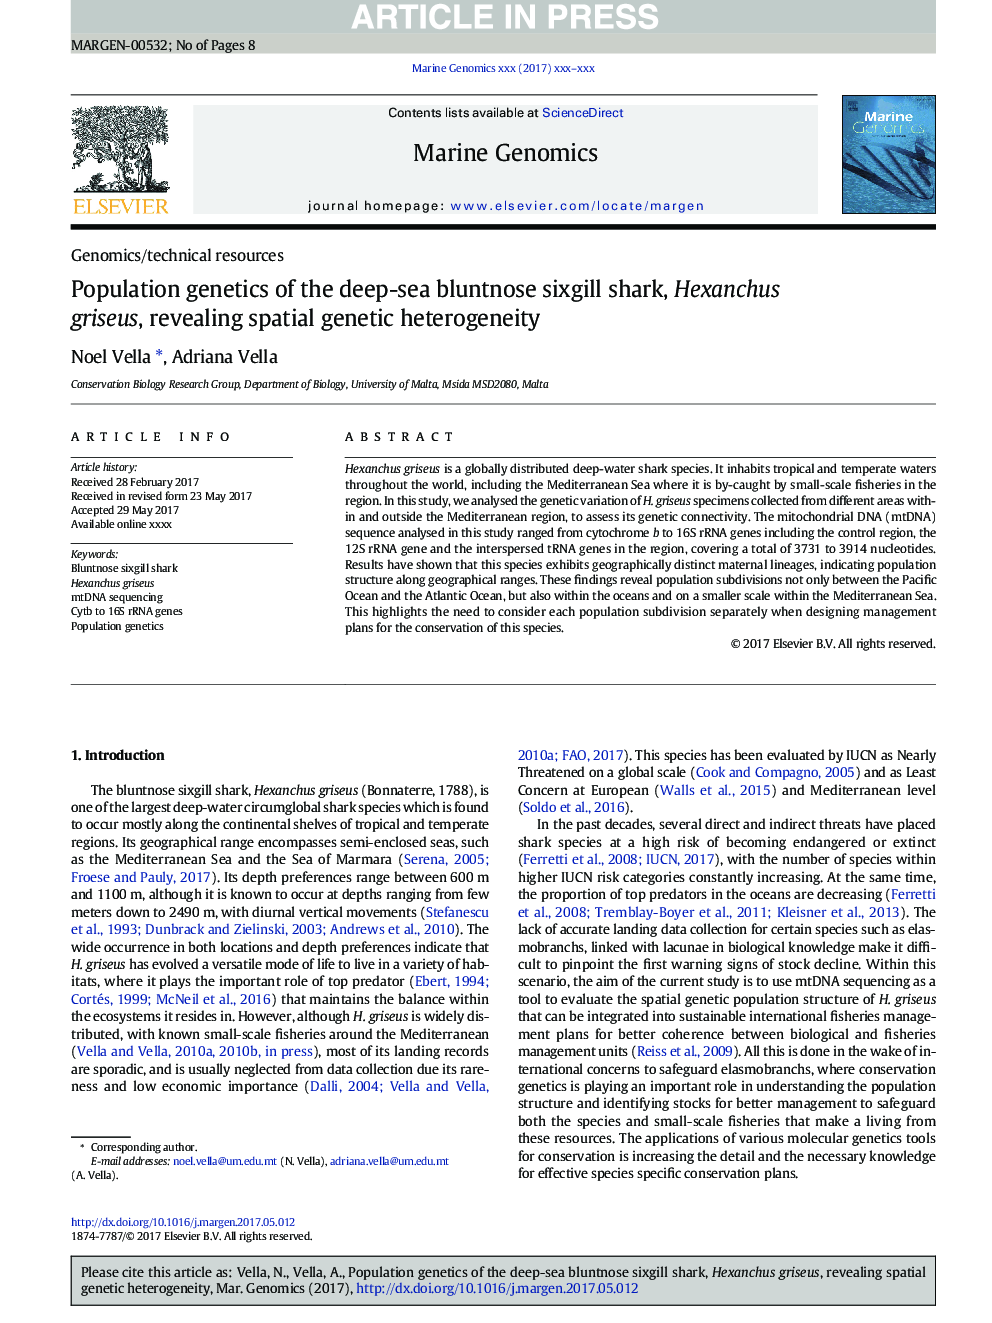 Population genetics of the deep-sea bluntnose sixgill shark, Hexanchus griseus, revealing spatial genetic heterogeneity